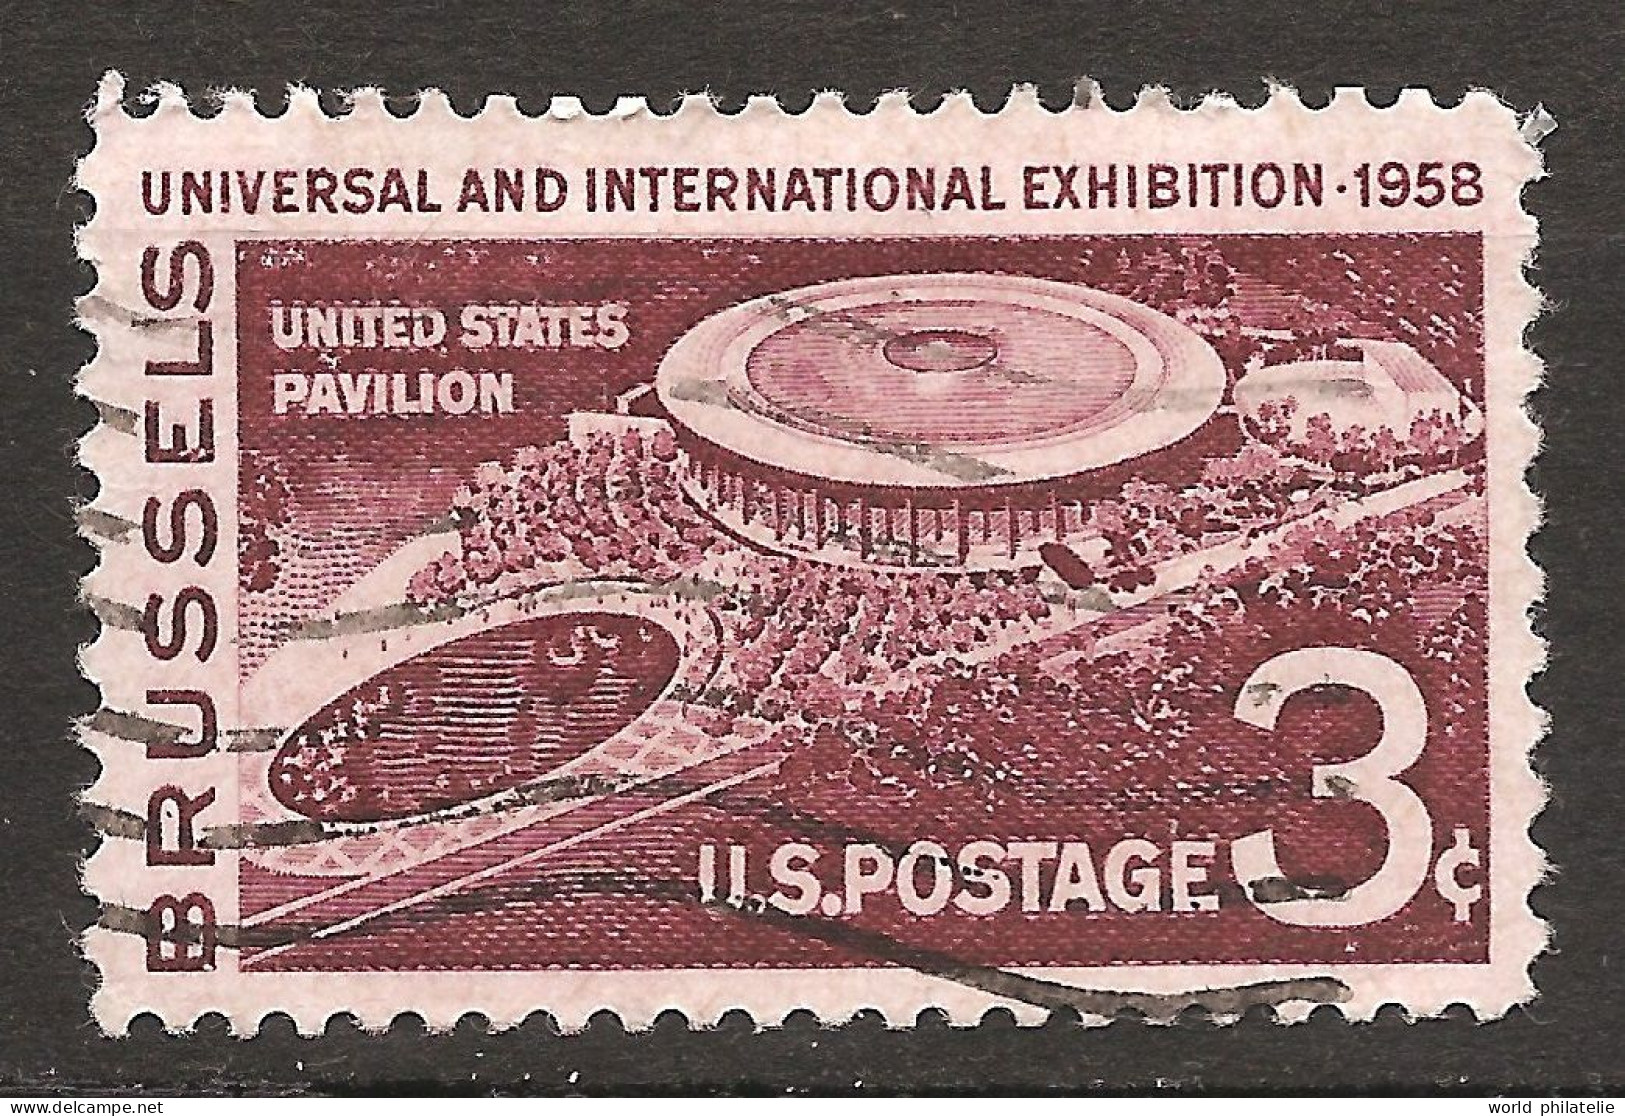 Etats-Unis D'Amérique USA 1958 N° 638 O Exposition Universelle, Bruxelles, Pavillon, Heysel, Orchestre, Disney, Cinéma - Usati